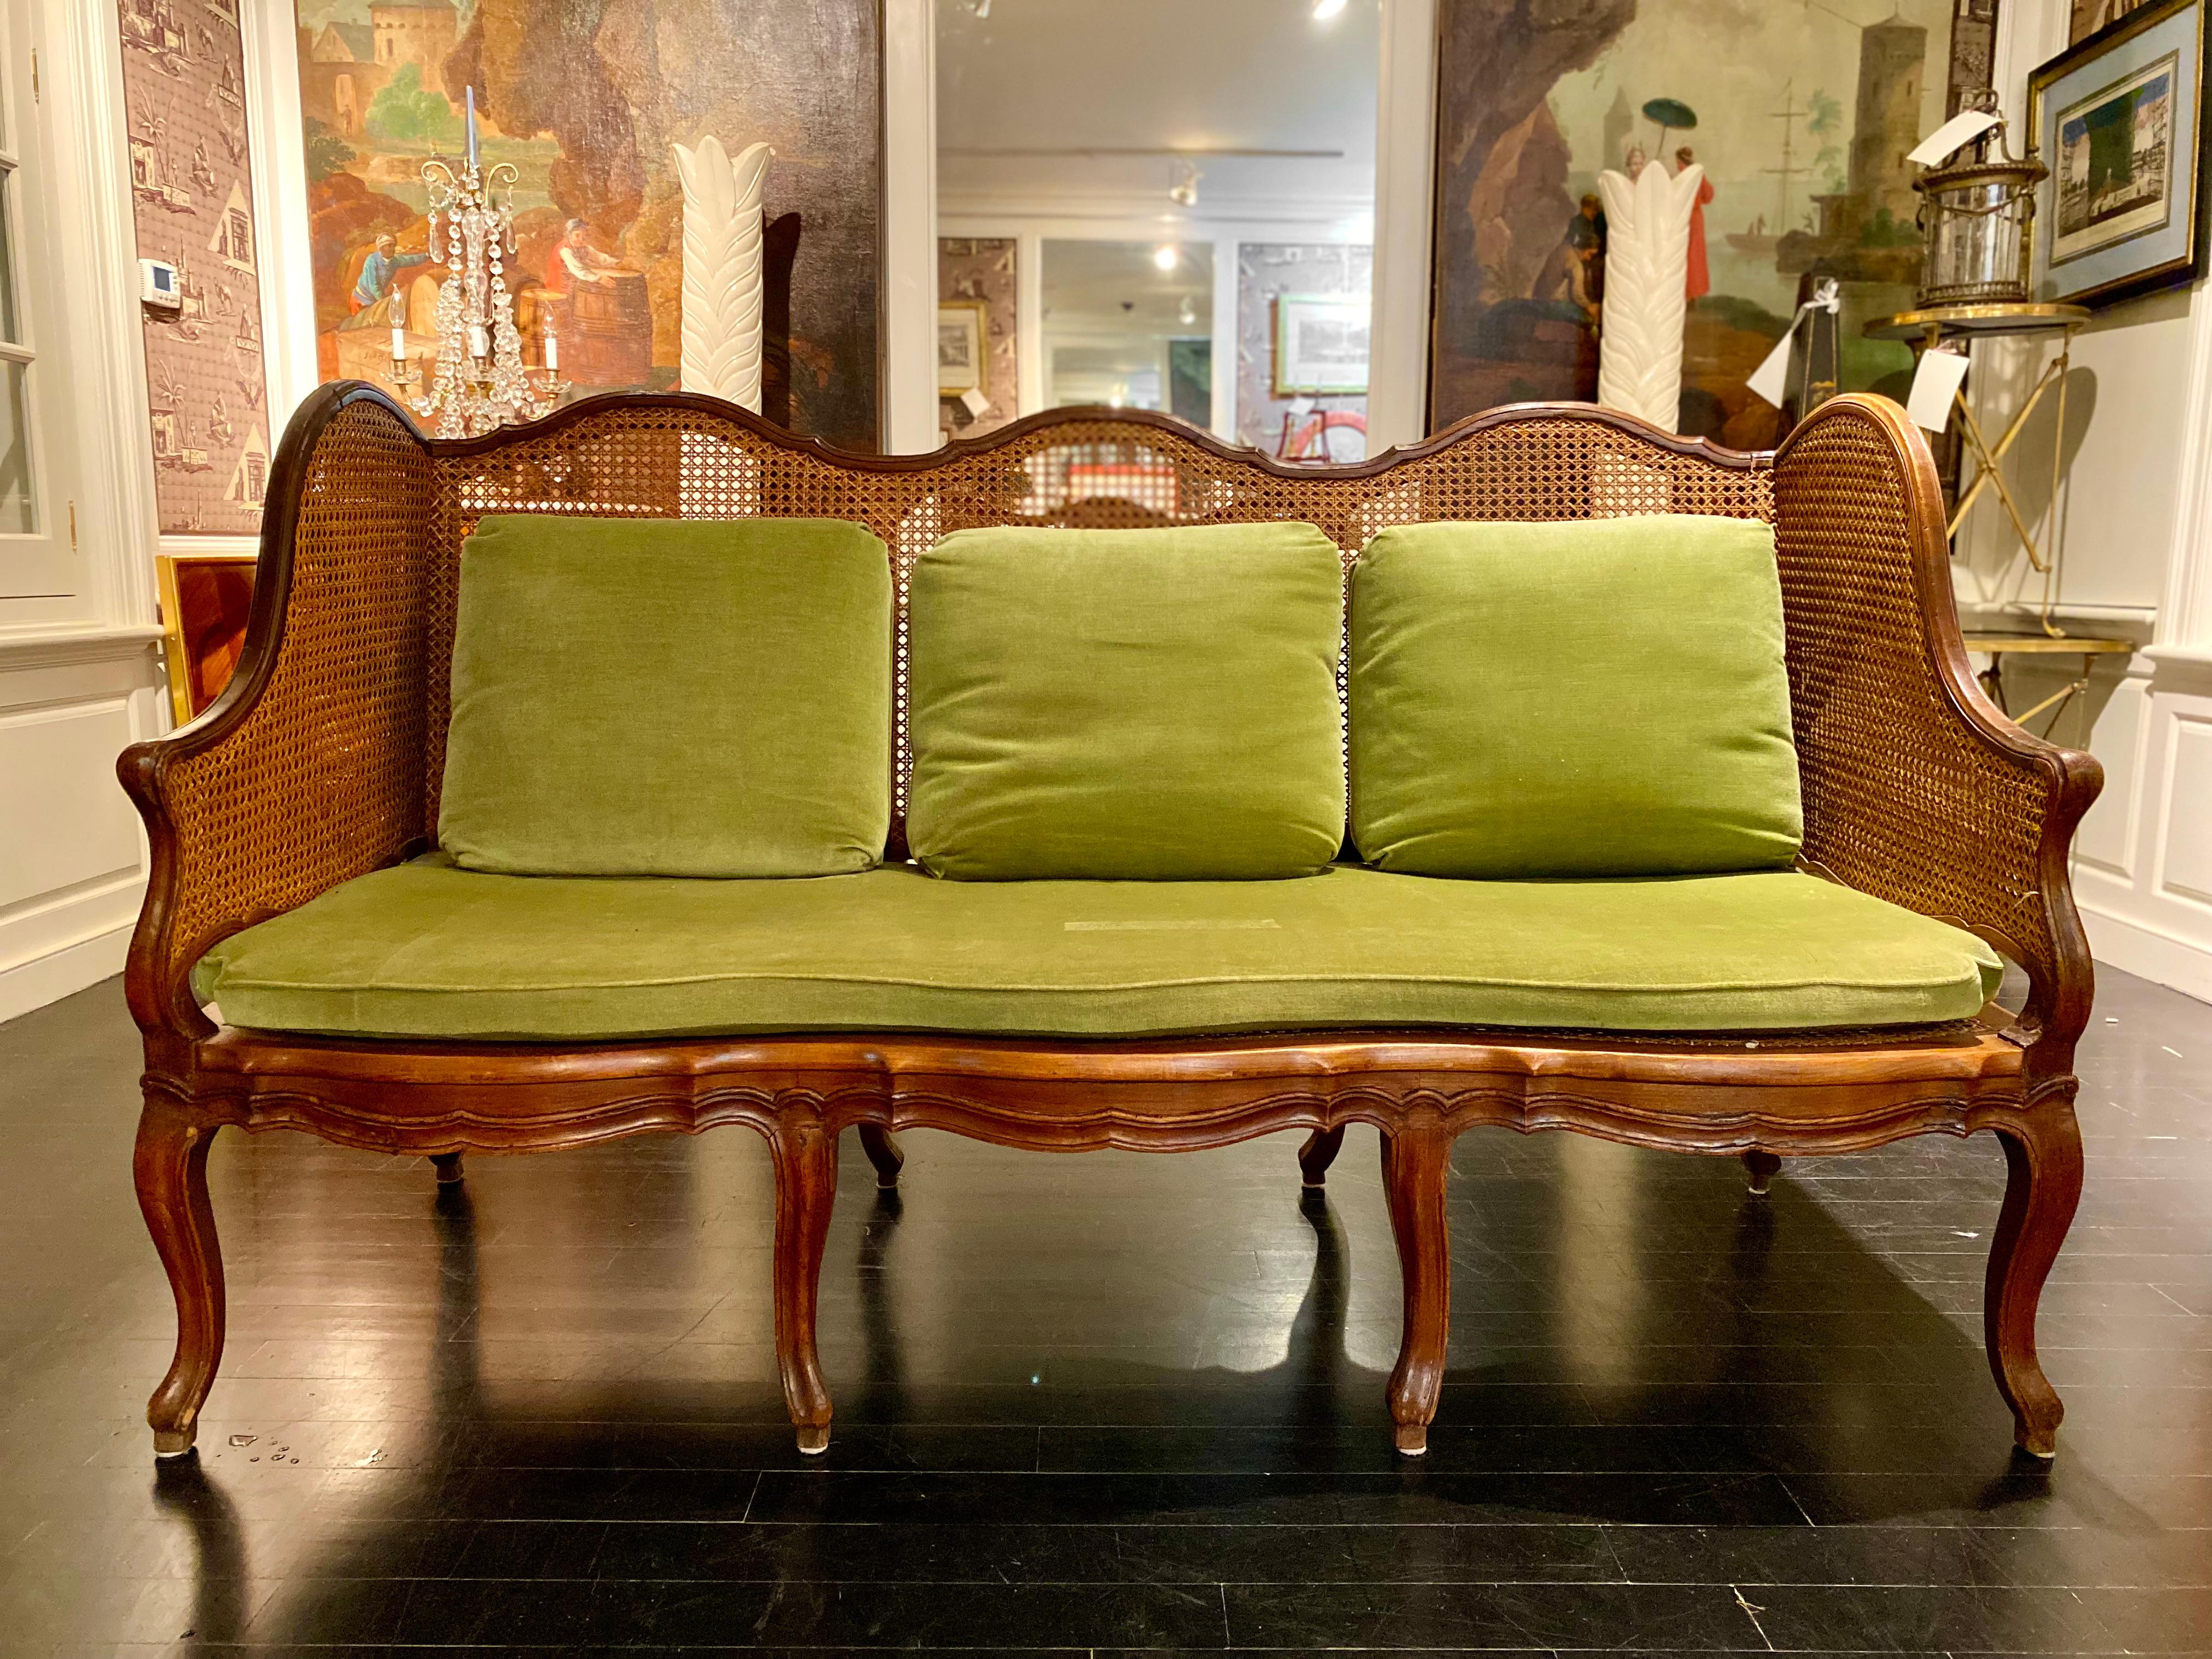 Grand canapé de style Louis XV, également appelé canapé ou sofa.
Canapé en très bon état, pas de dommages au cannage, pièce rare. Côtés à double vitrage. Coussins en crin de cheval. 3 places assises confortables.